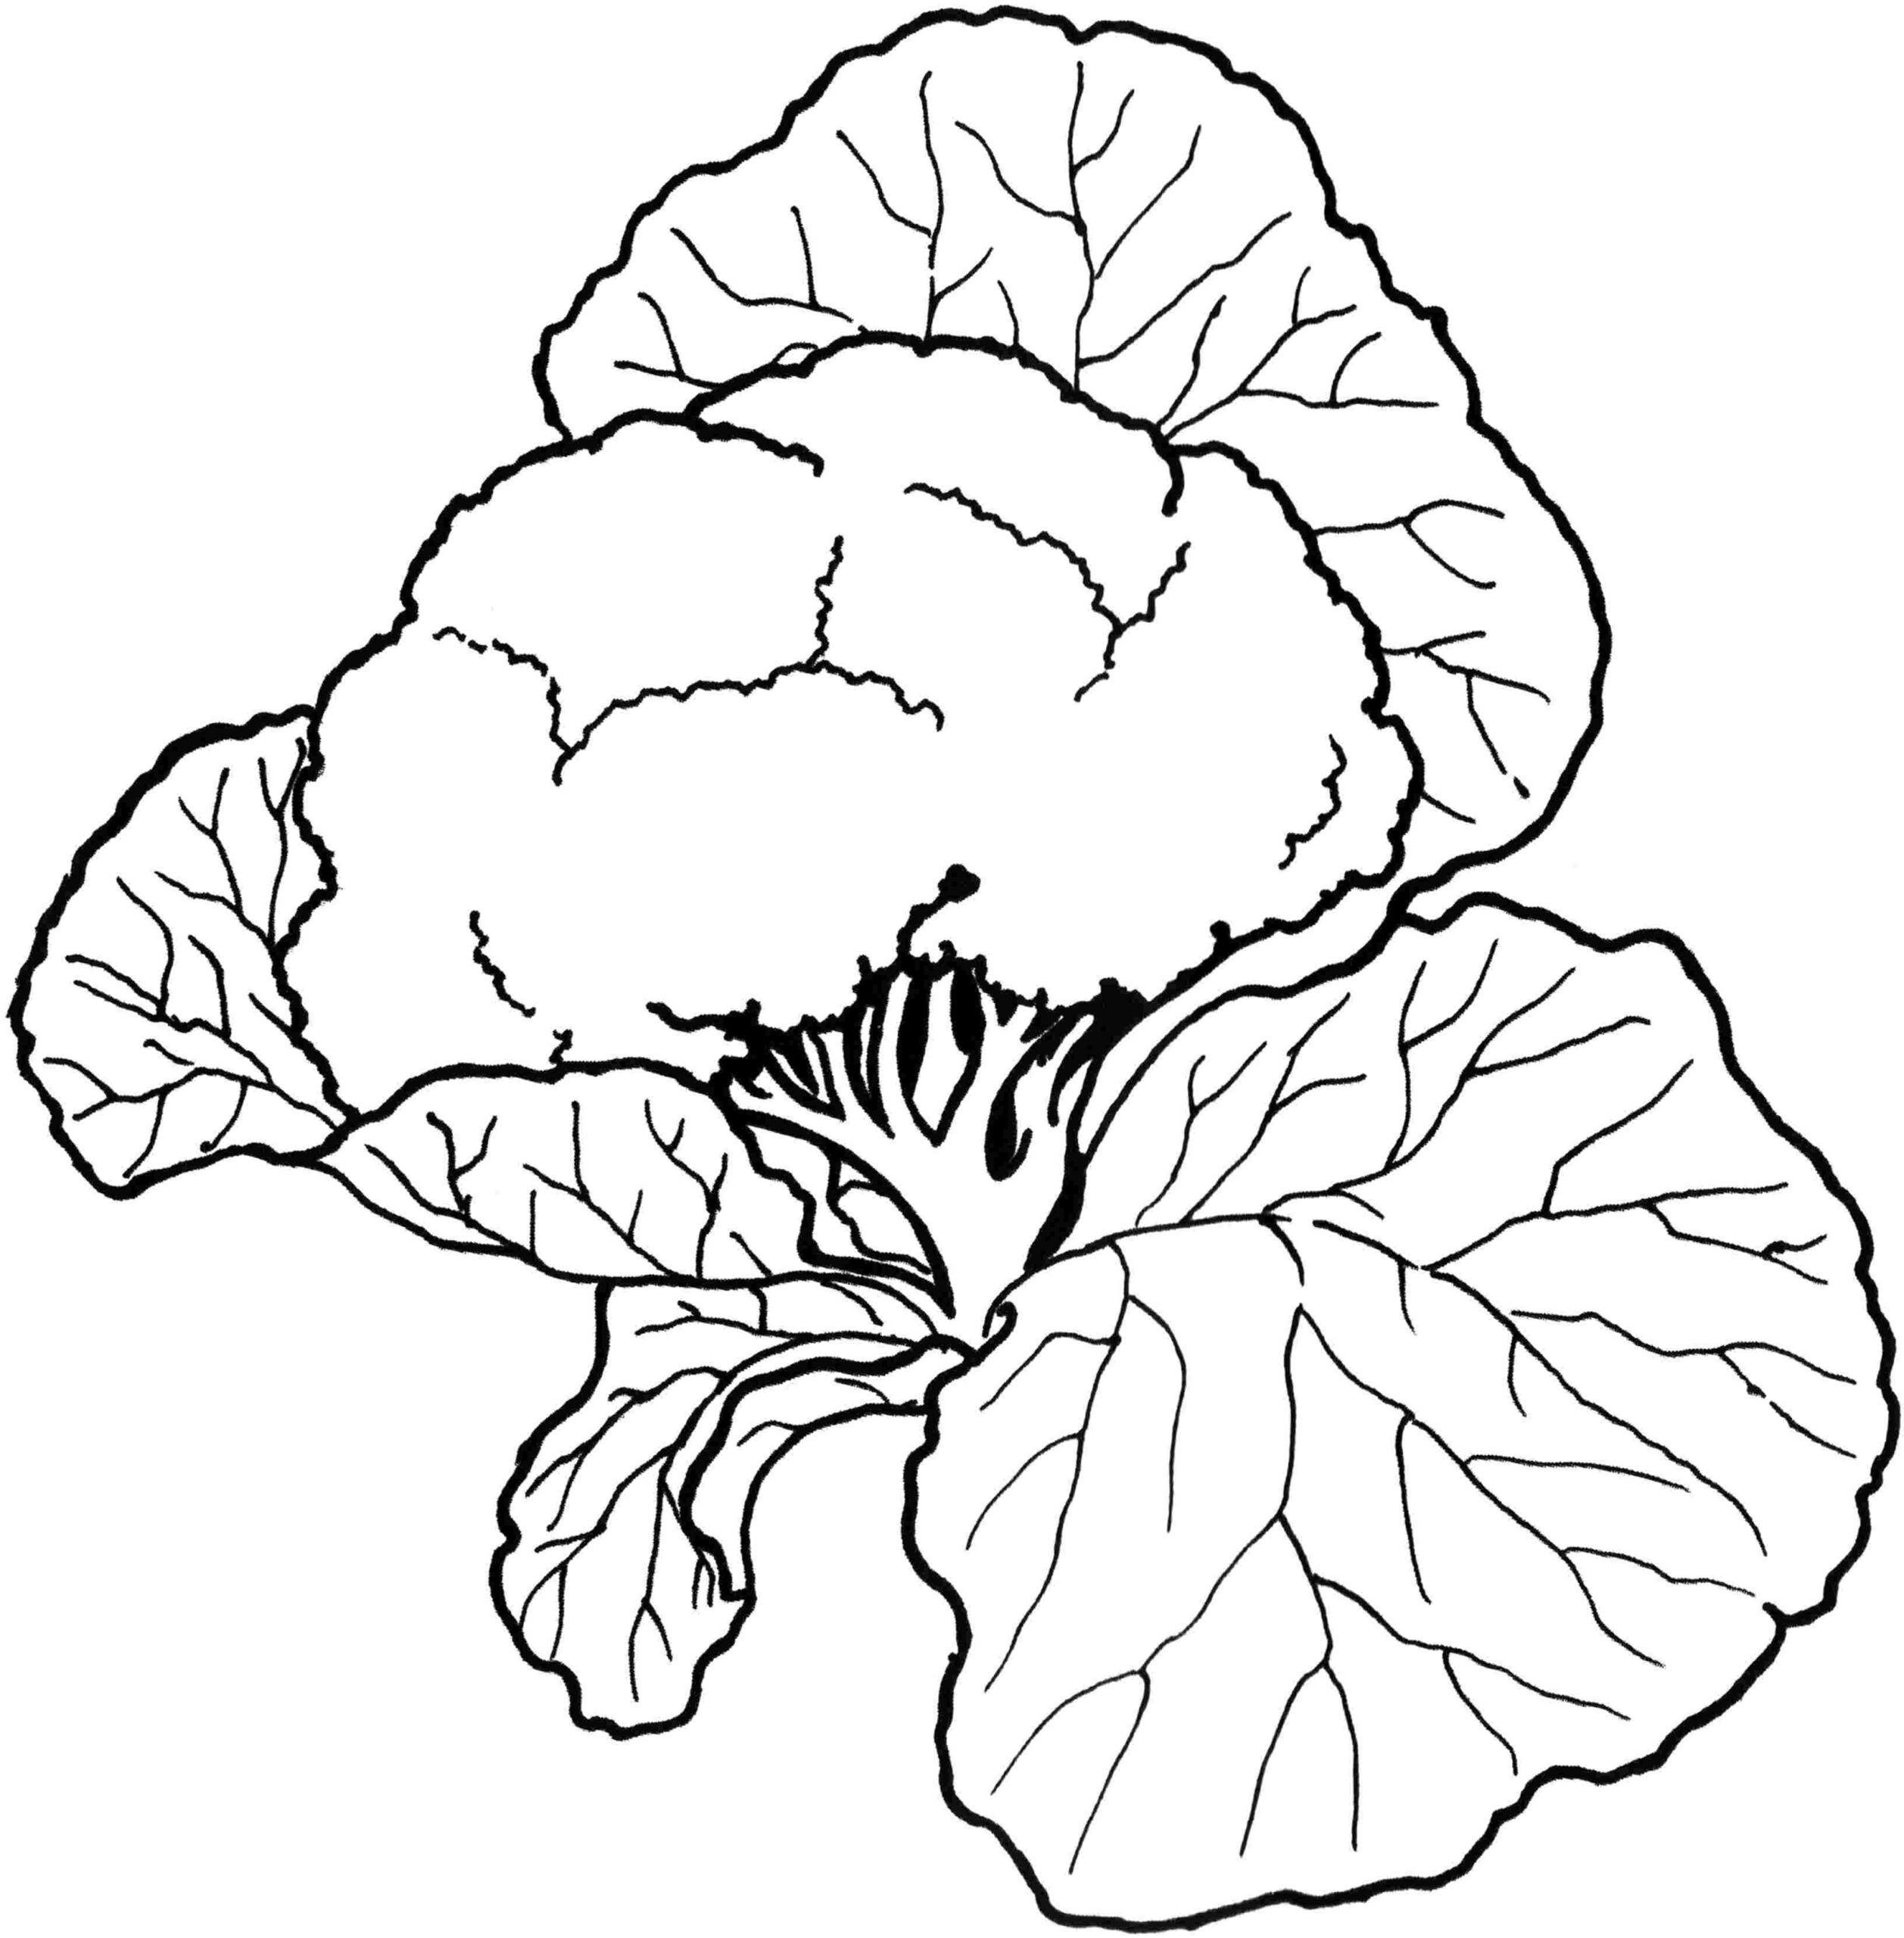 Kolorowanka warzywa kalafior rośnie wśród dużych liści